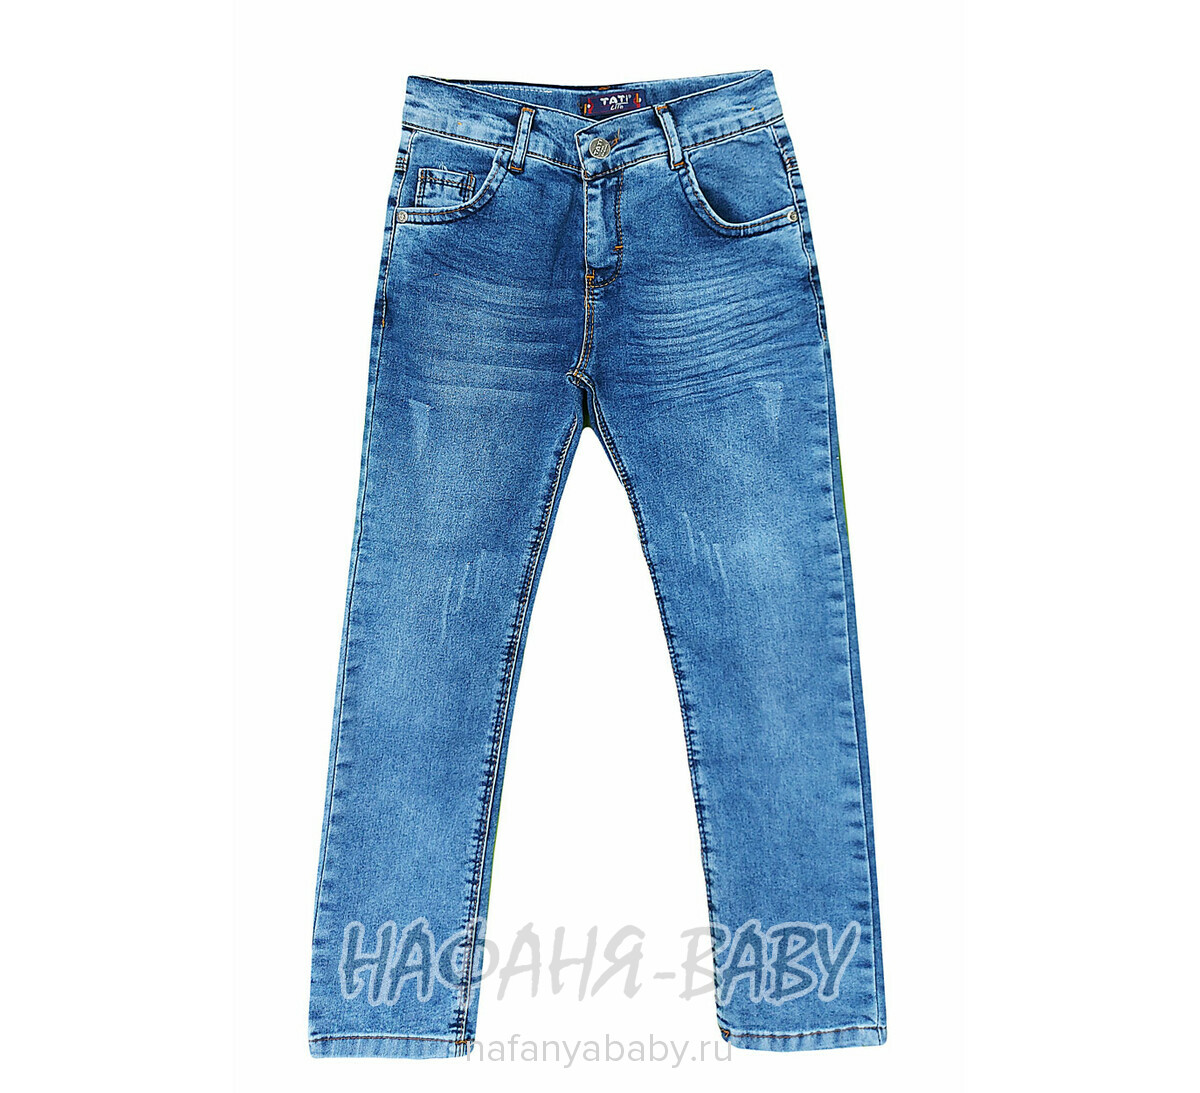 Подростковые джинсы TATI Jeans для мальчика арт: 2876, 9-12 лет, оптом Турция